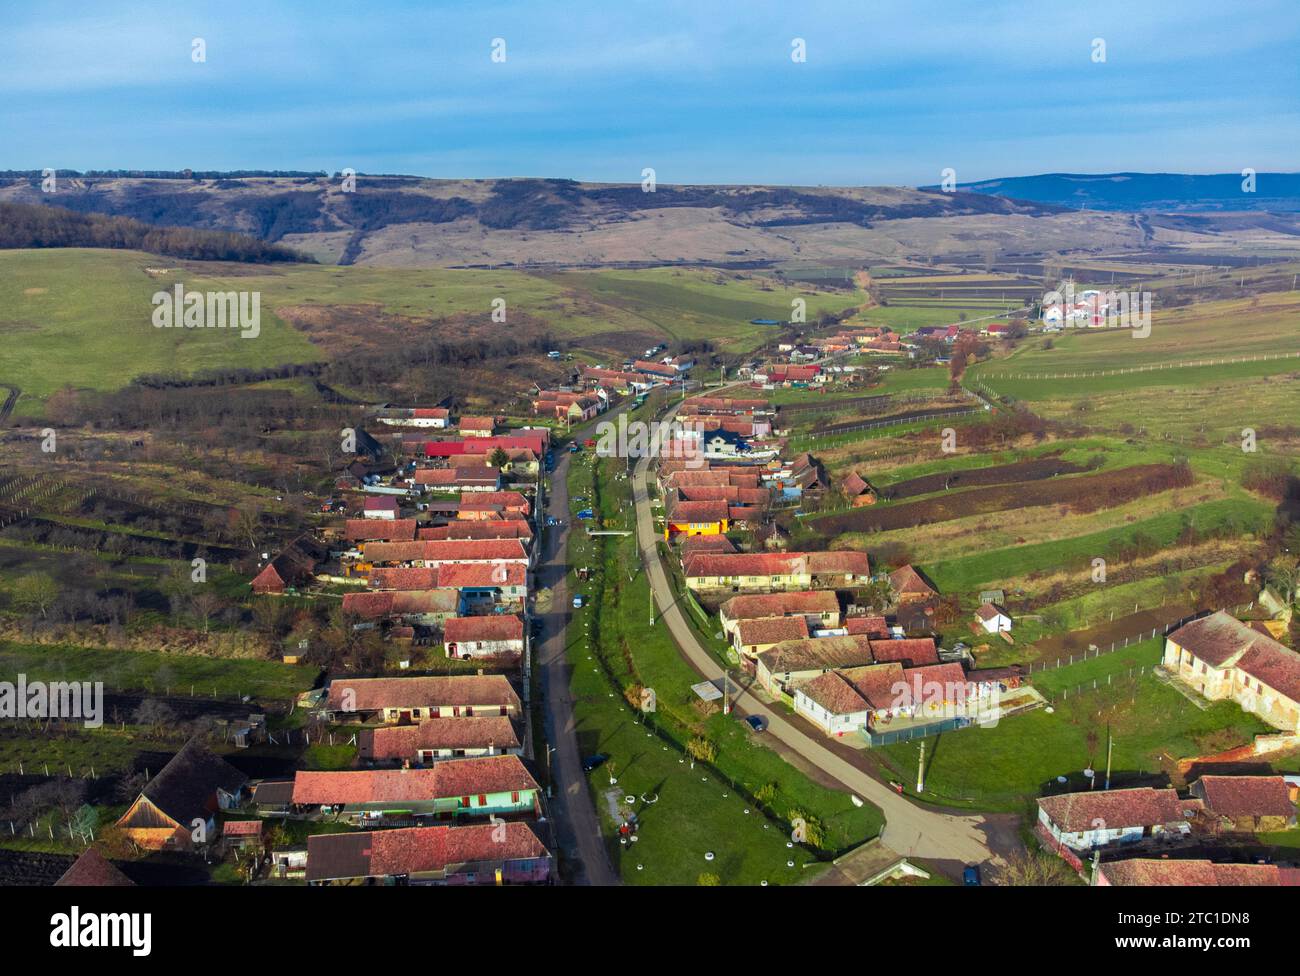 Ein Blick aus der Vogelperspektive auf ein malerisches Dorf in Rumänien, umgeben von üppigen grünen Hügeln. Stockfoto